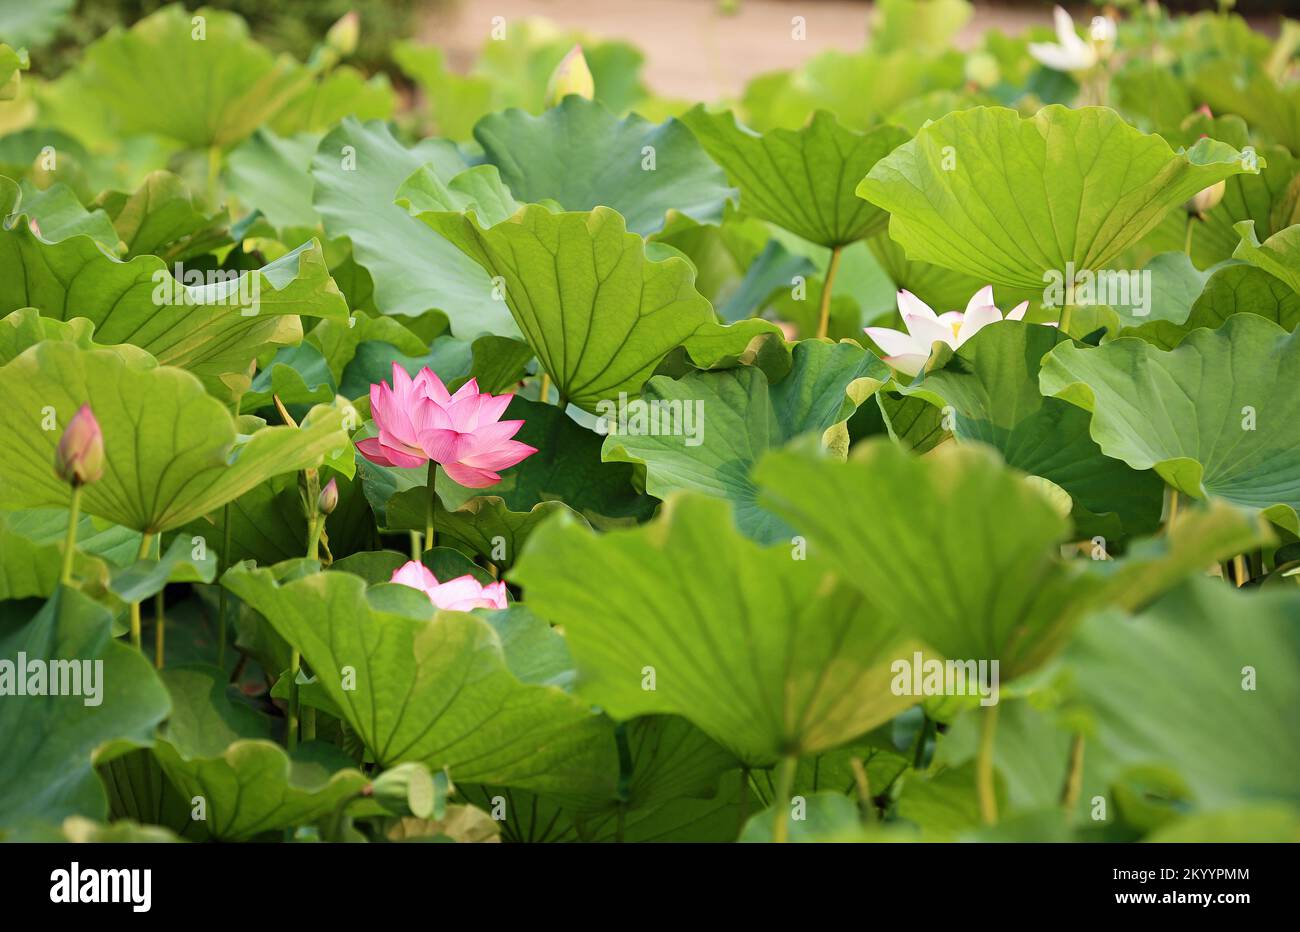 Lotusblume und Lotusblätter - Australien Stockfoto